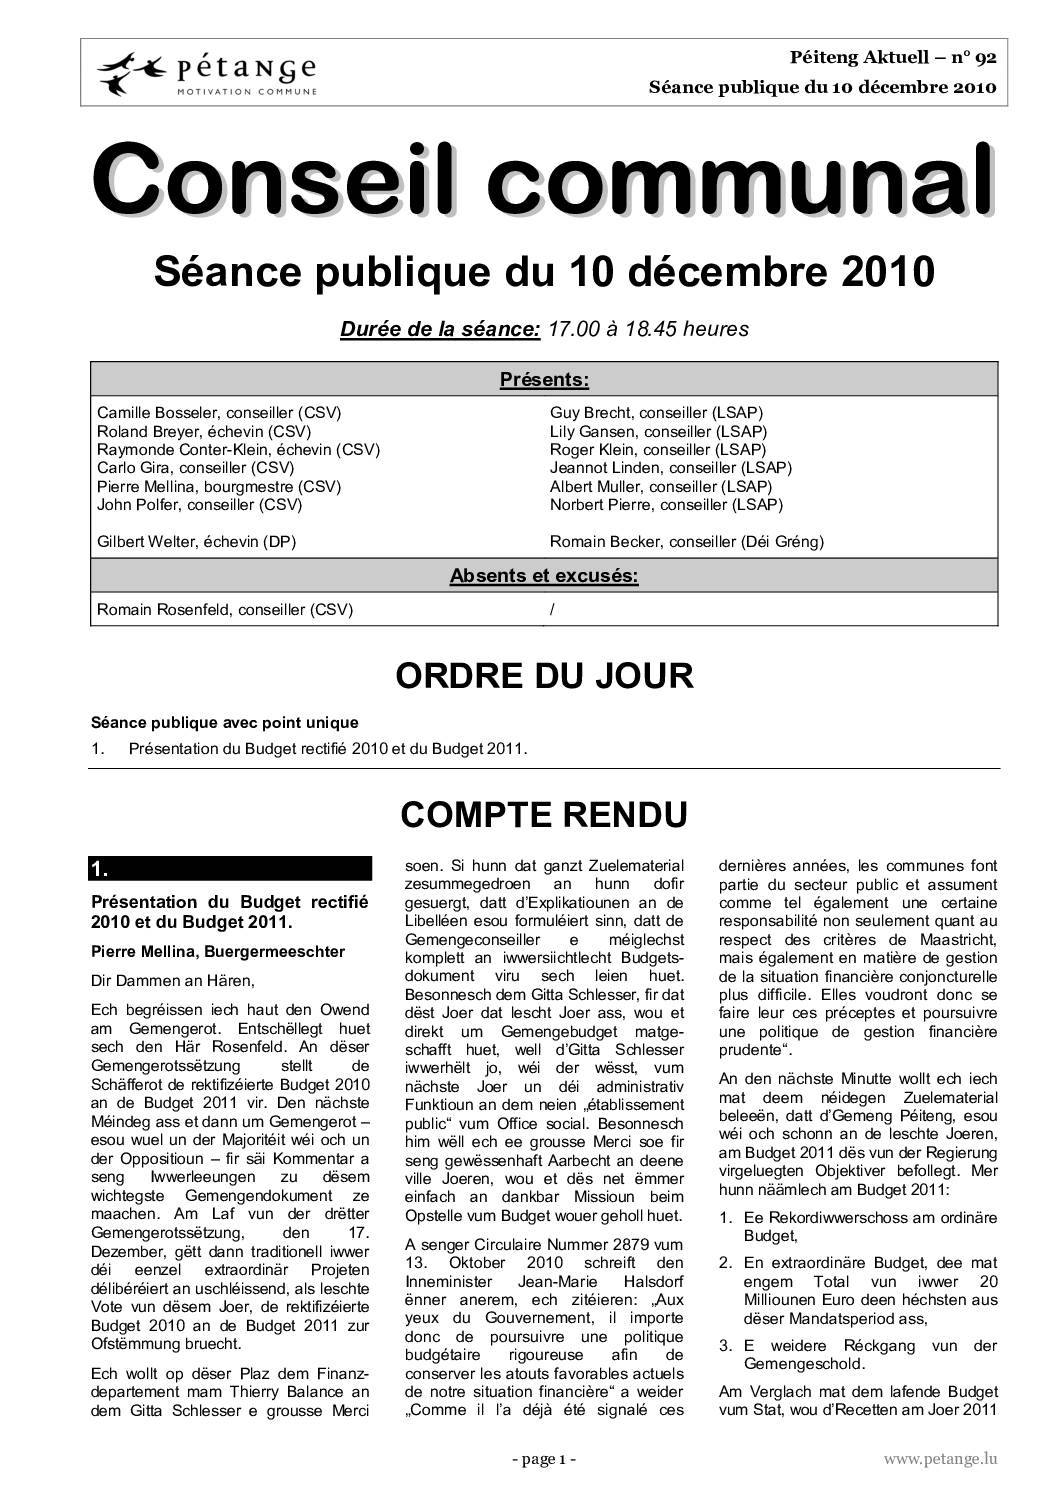 Rapport des séances du conseil communal du 10.12.2010, 13.12.2010 et 17.12.2010